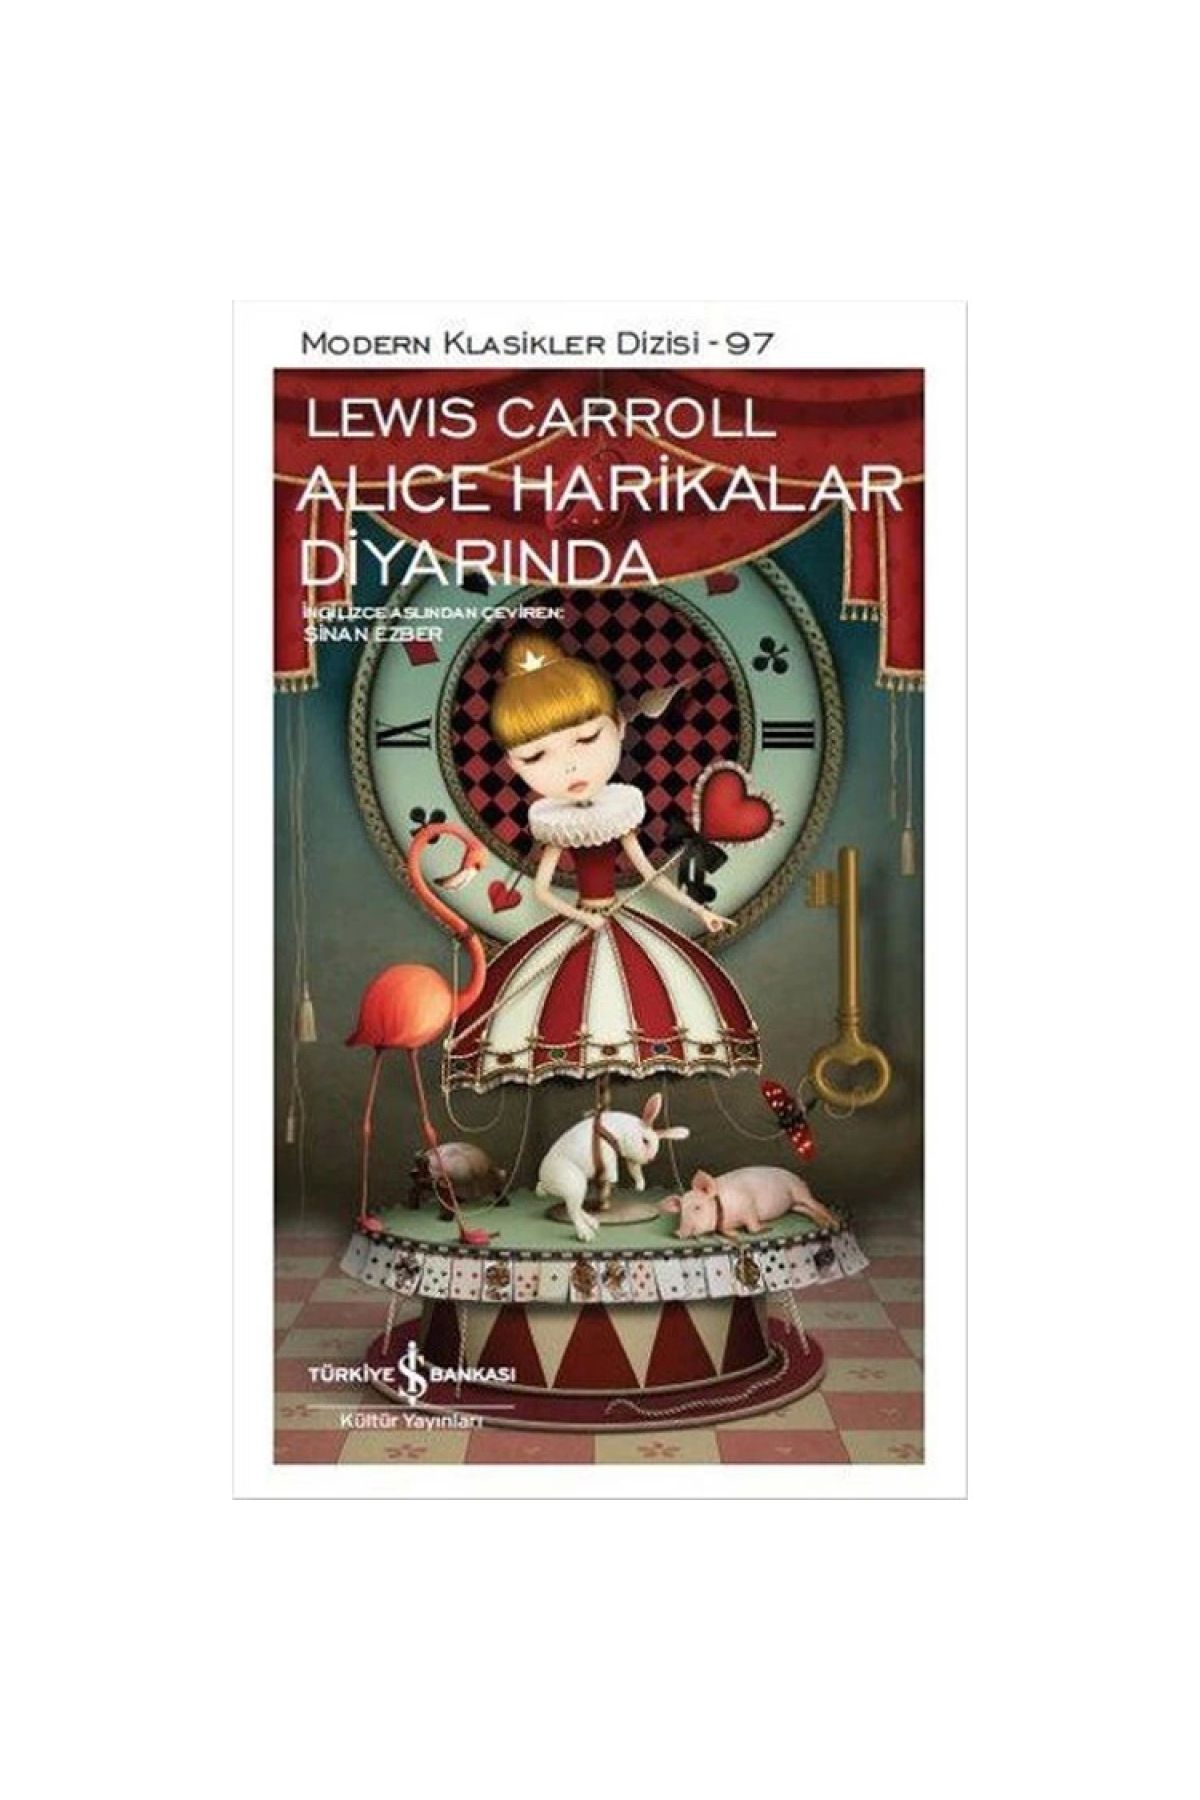 Türkiye İş Bankası Kültür Yayınları Alıce Harikalar Diyarında - Lewis Carroll